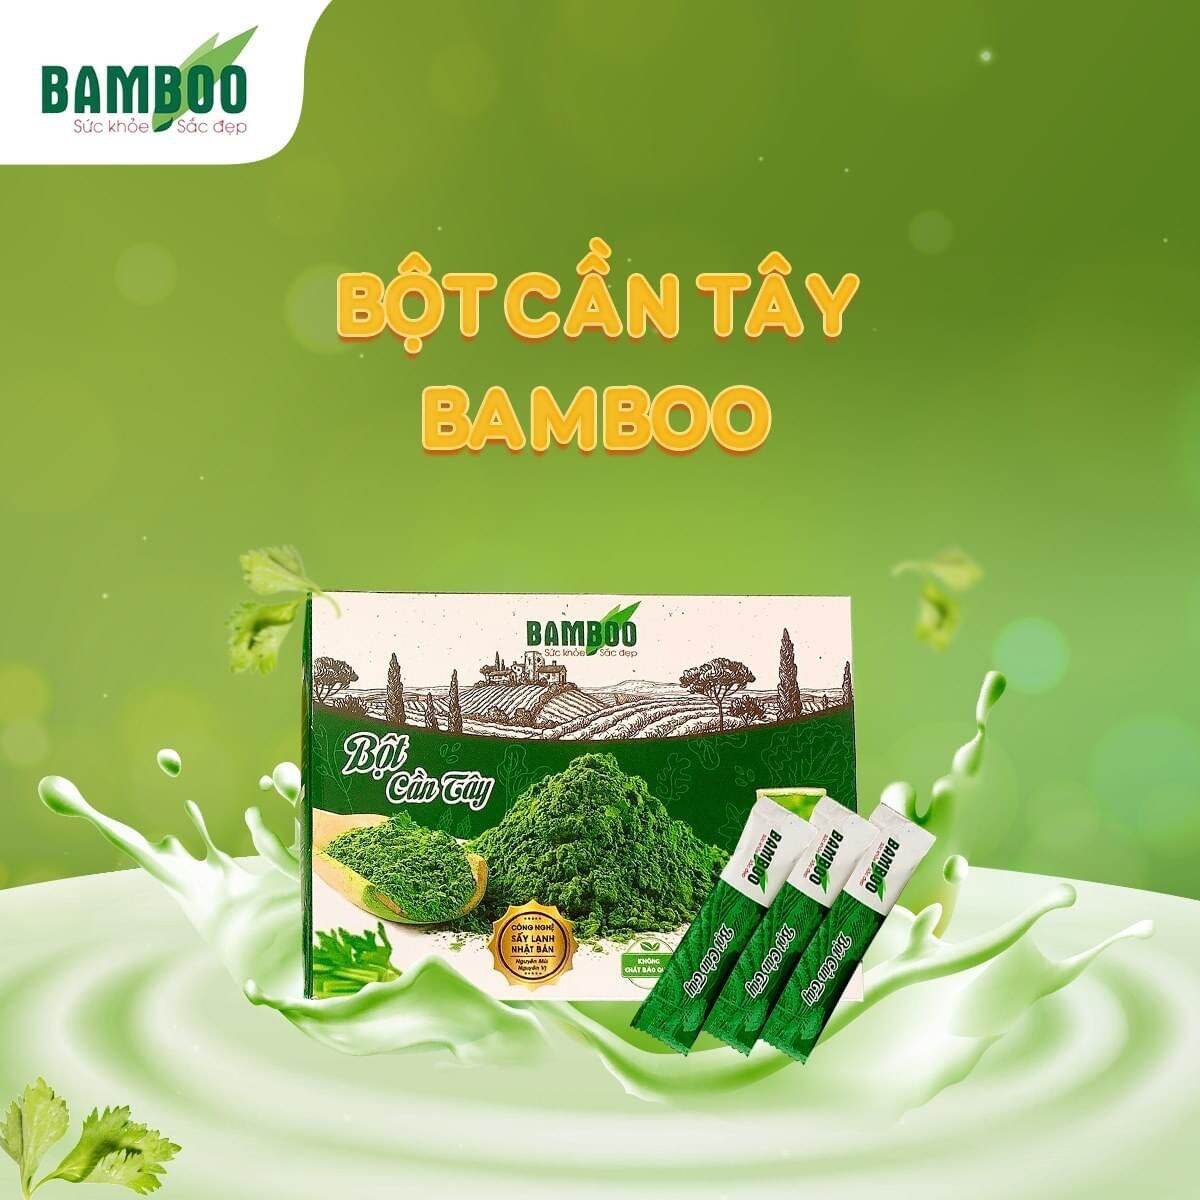 Các bạn đã biết gì chưa Bột cần tây bamboo nguyên chất có nguồn gốc từ các